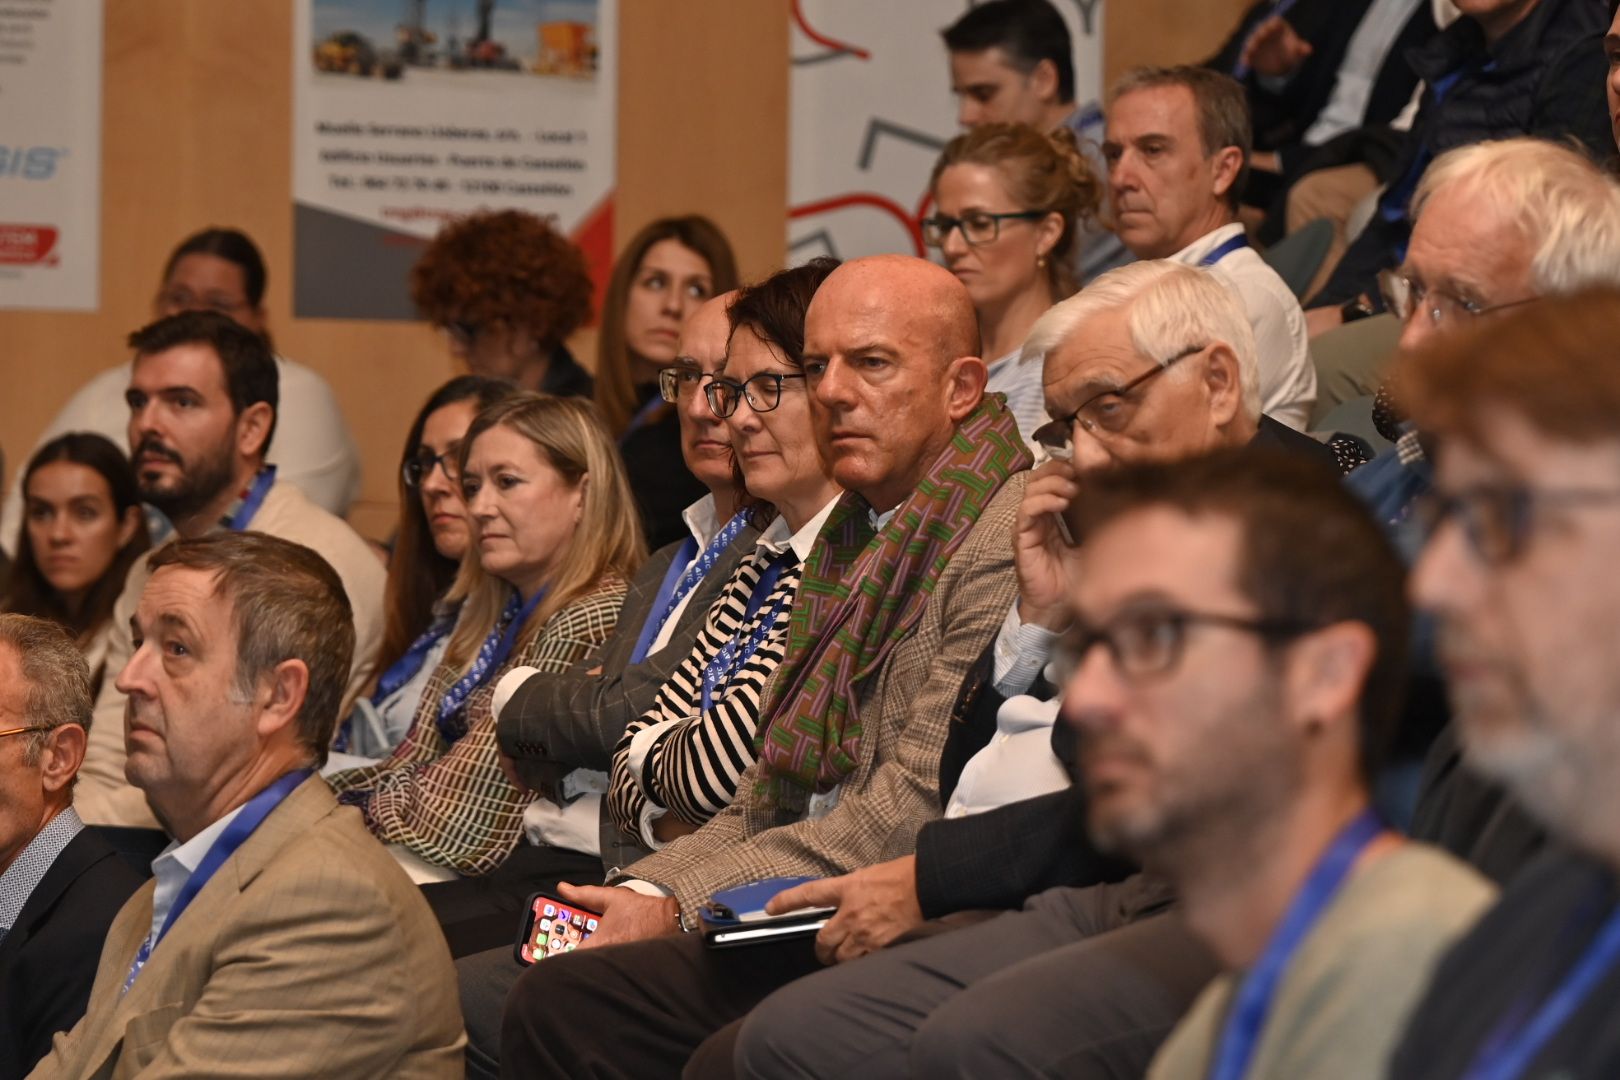 Congreso internacional del técnico cerámico en Castelló